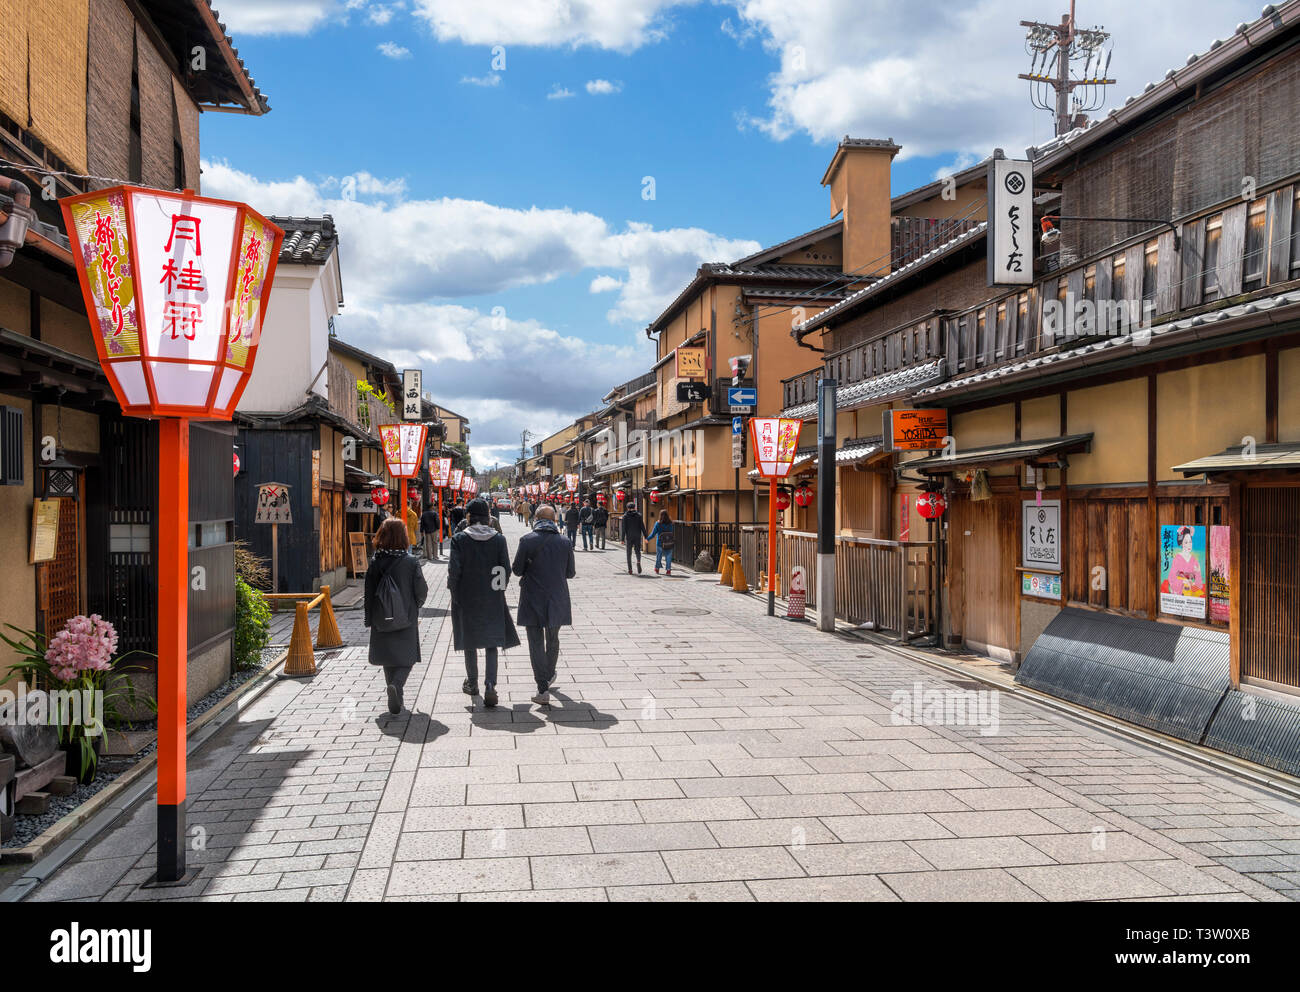 Edificios tradicionales japoneses en Hanamikoji-dori, una calle en el histórico distrito Gion de Kyoto, Japón Foto de stock